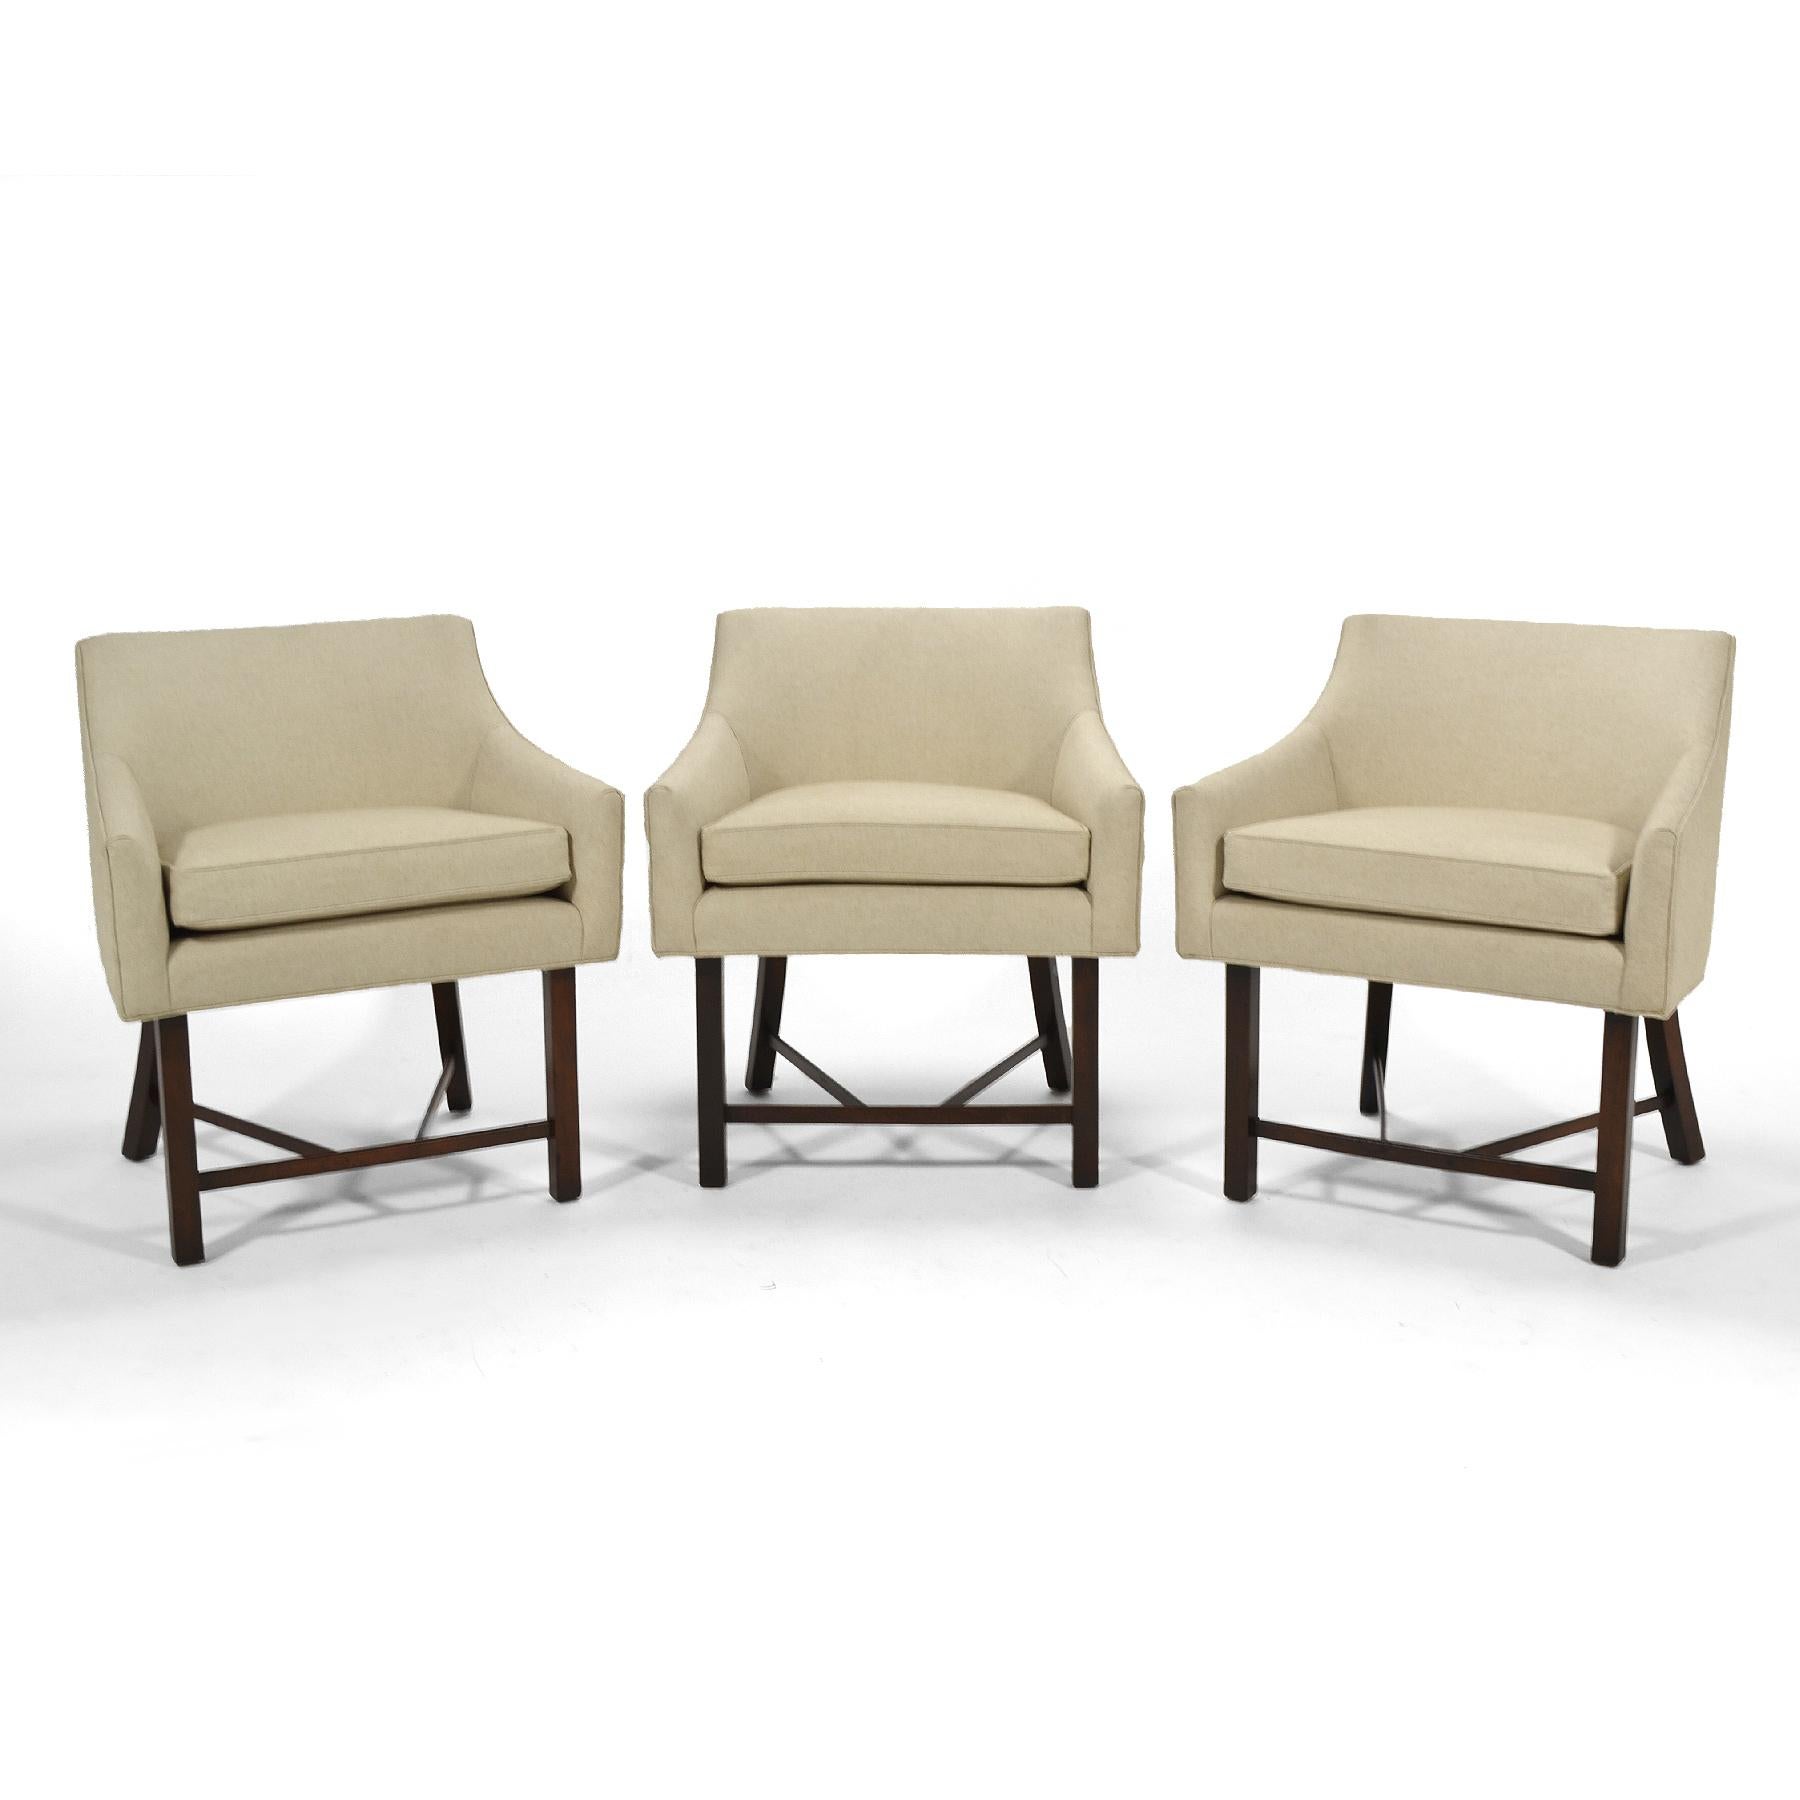 Diese leichten, geschmeidigen und eleganten Sessel von Harvey Probber sind perfekt skaliert, um als Teil einer größeren Sitzgruppe oder allein als Beistellsessel zu dienen. Ihre Proportionen und ihr Profil machen sie aus jedem Blickwinkel schön und